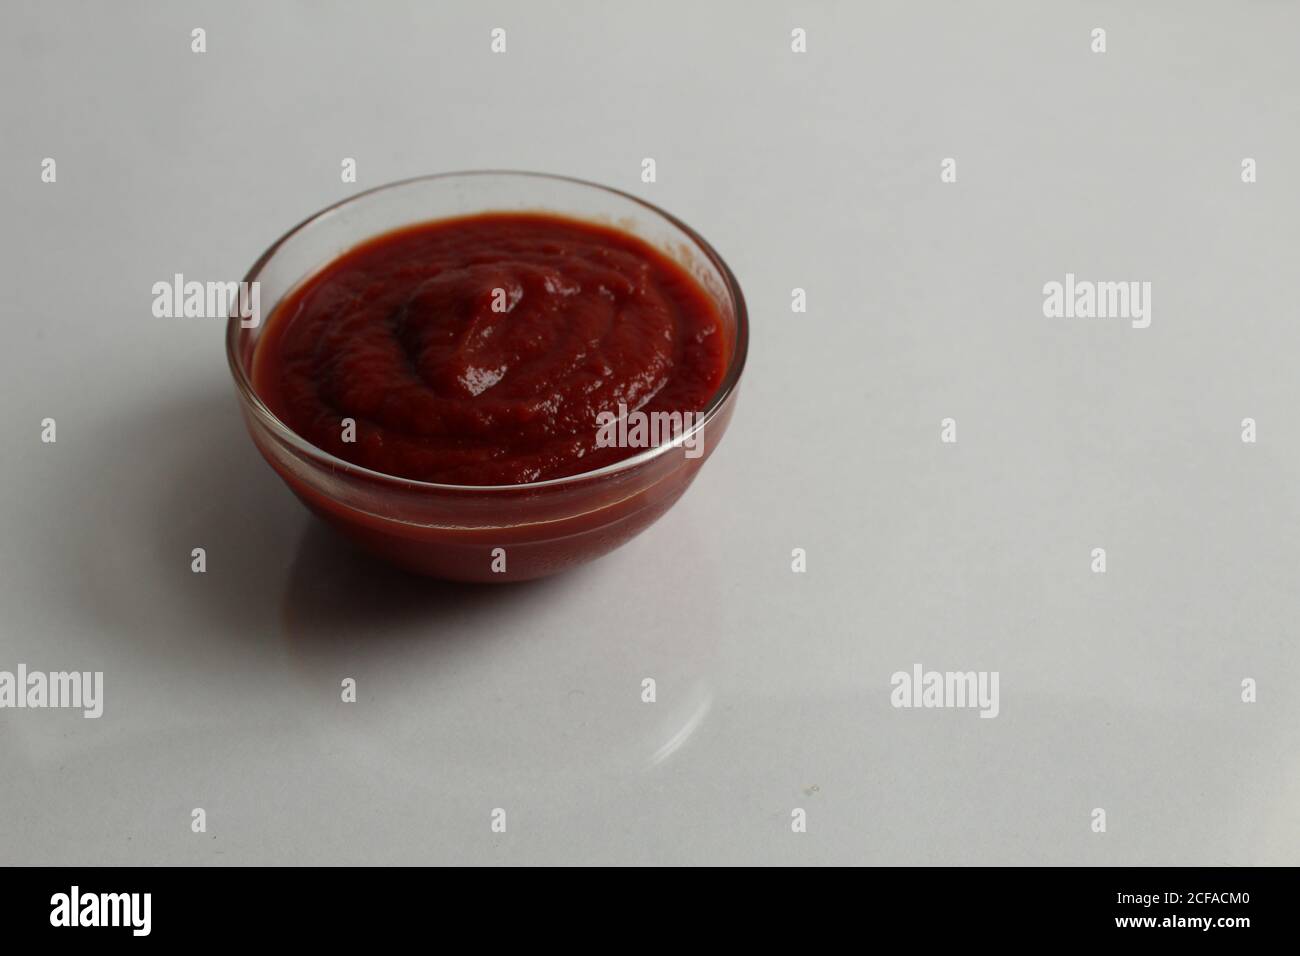 el tomate rojo caliente o la salsa dulce se vierte en un plato de cazuela de cristal sobre una copia de fondo gris blanco espacio Foto de stock